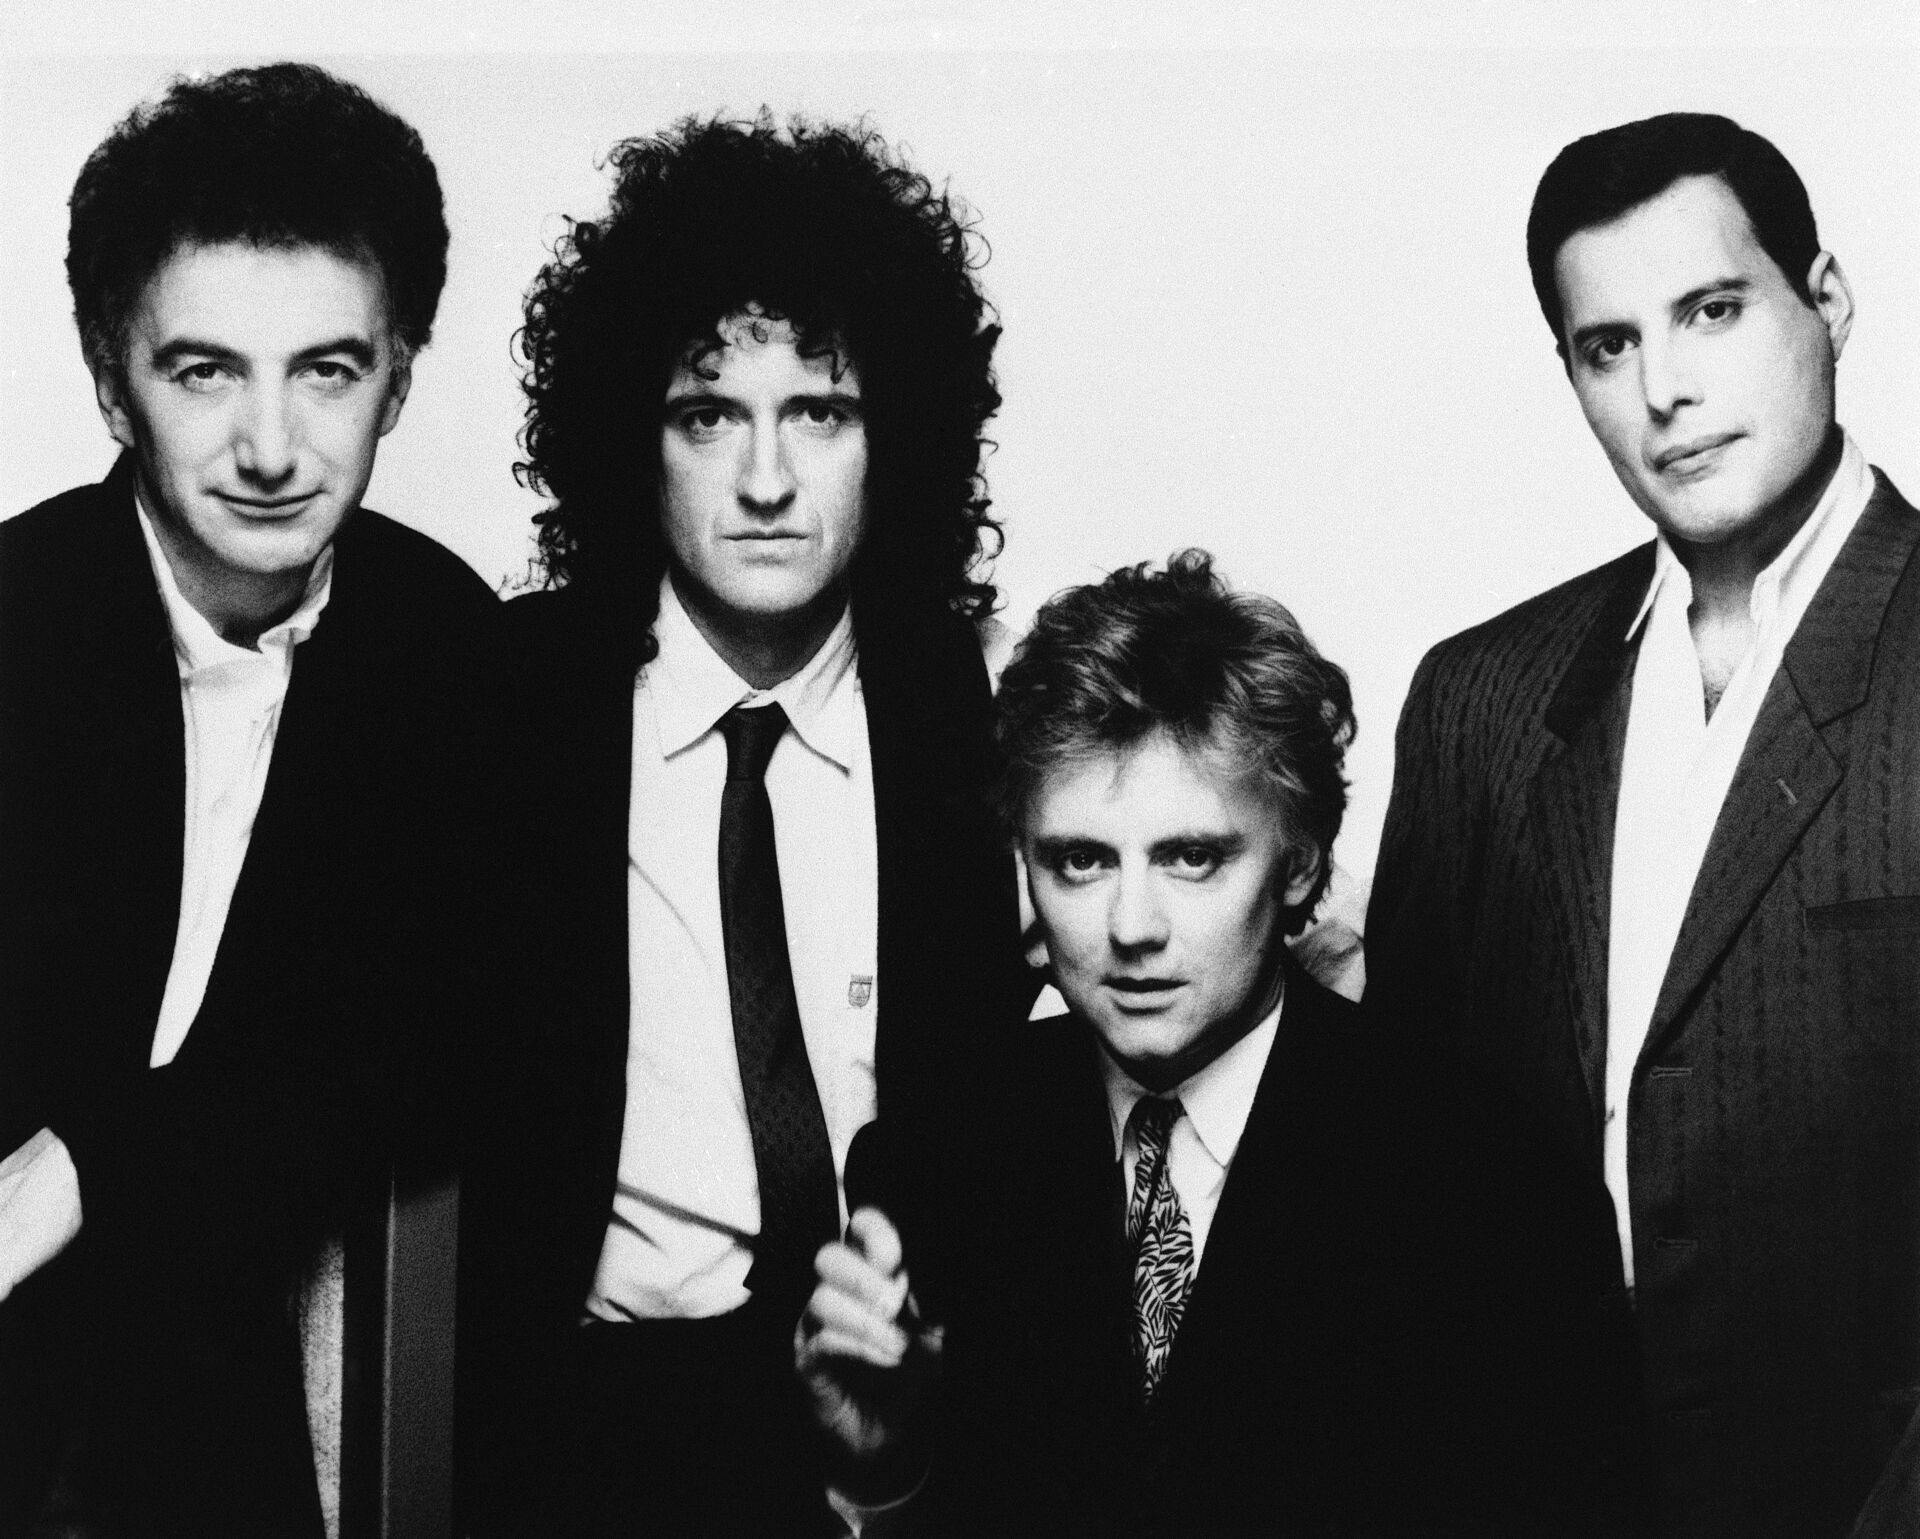 Queen-nummeret "Fat Bottomed Girls" er fjernet fra en ny udgave af deres populære album.